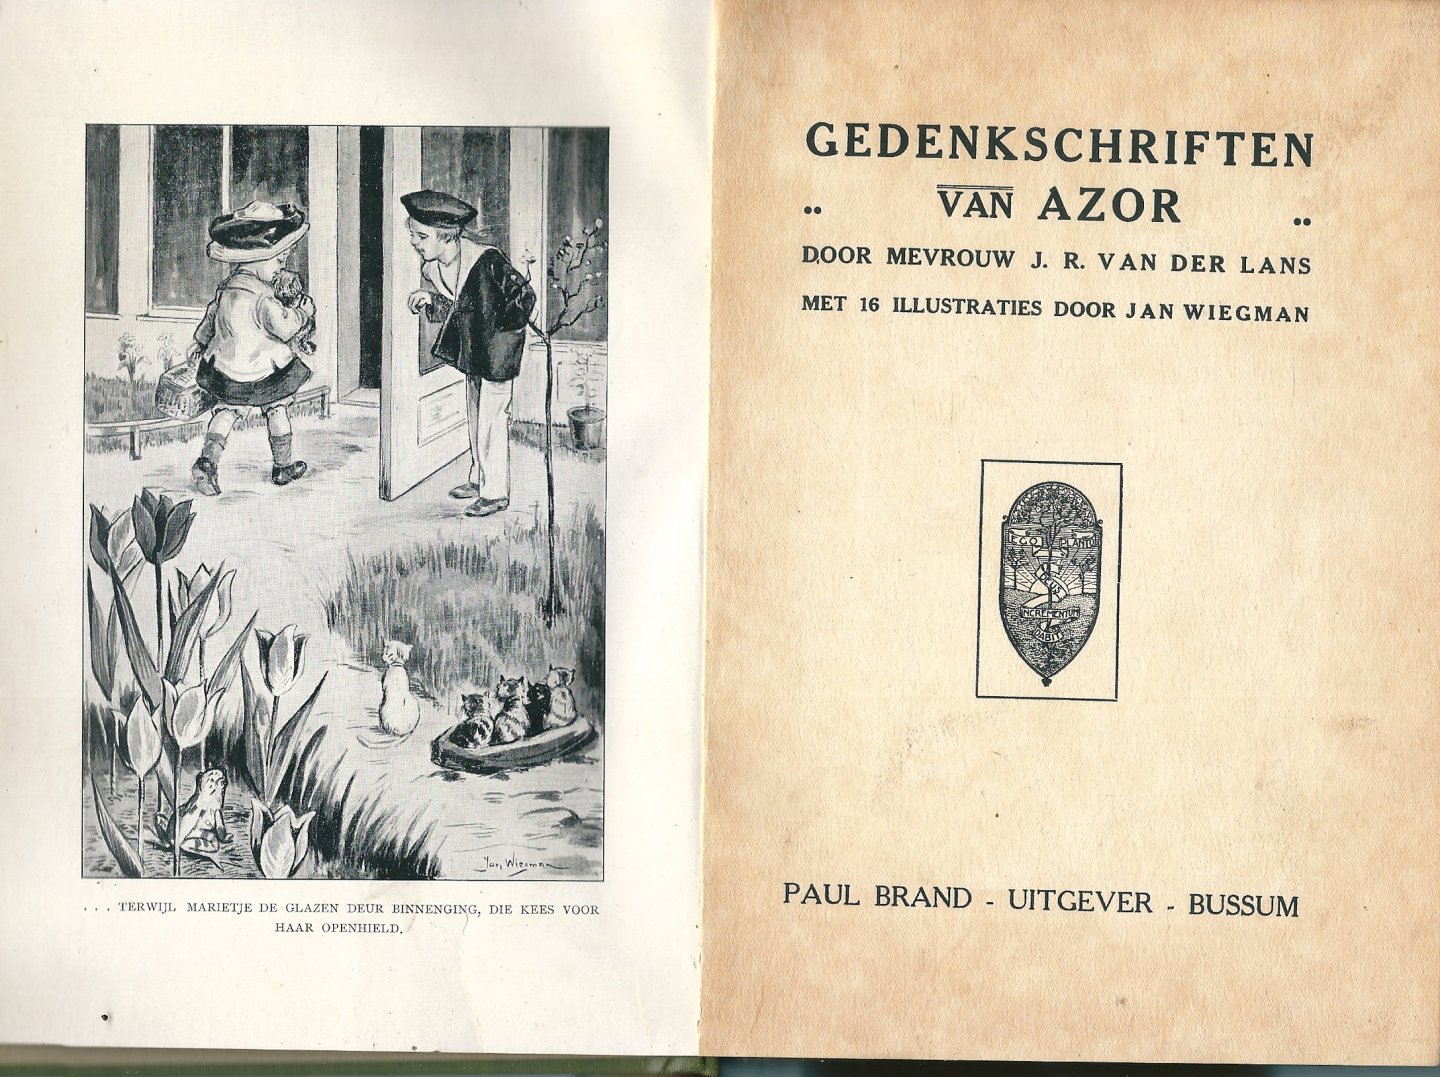 Mevrouw J.R. van der Lans met illustraties van Jan Wiegman - Gedenkschriften van Azor